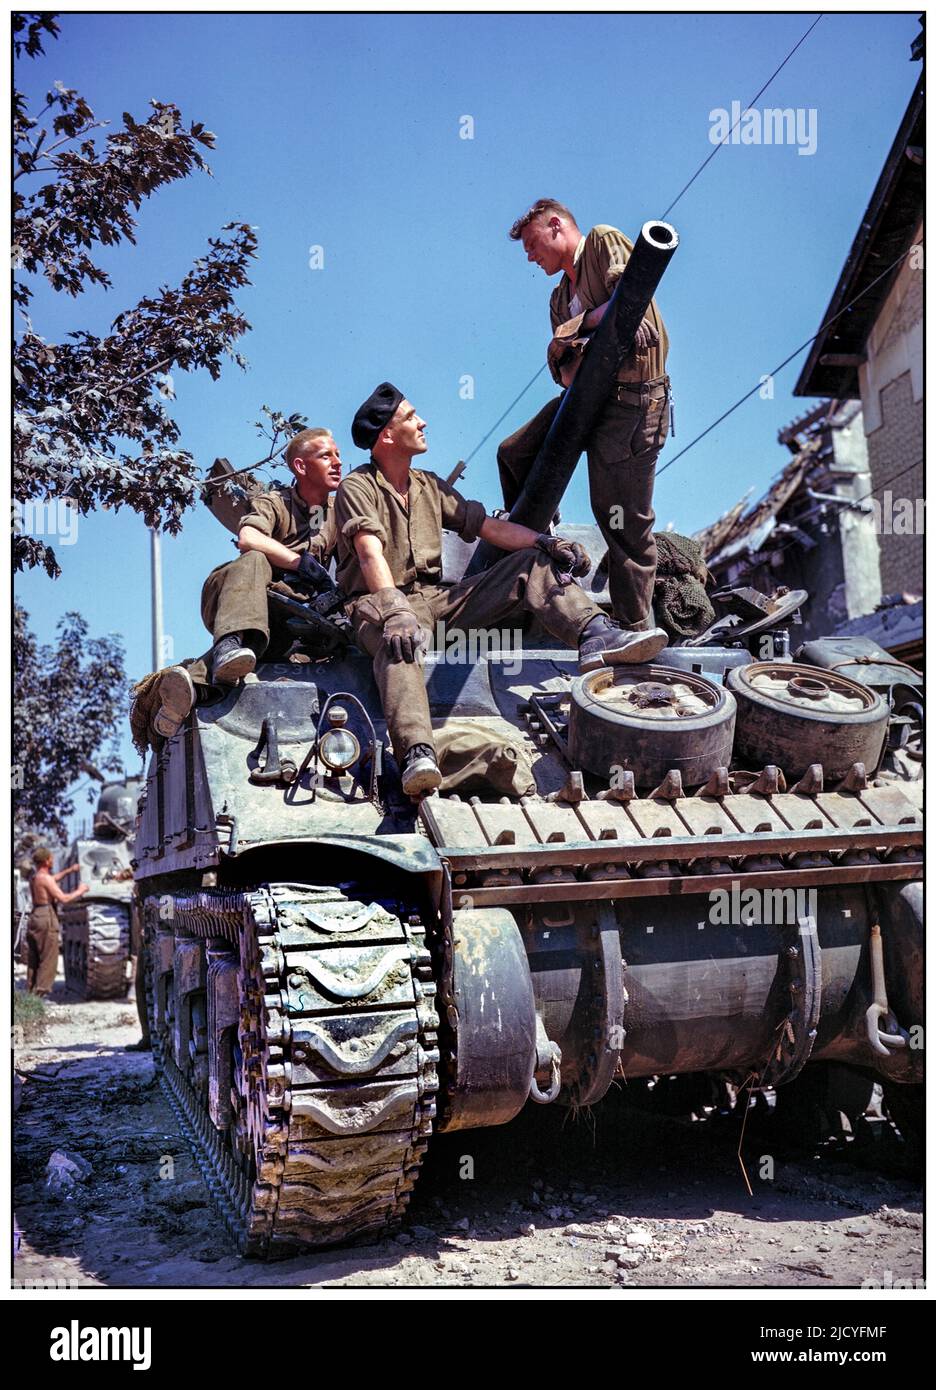 D-Day Advance Sherman Tanks WW2 tripulación canadiense de un tanque Sherman al sur de Vaucelles Normandía, junio de 1944 tropas aliadas avanzando hacia el sur después del Día D (operación Overlord) 6th de junio de 1944 Vaucelles Calvados Normandía Francia imagen en color original Foto de stock